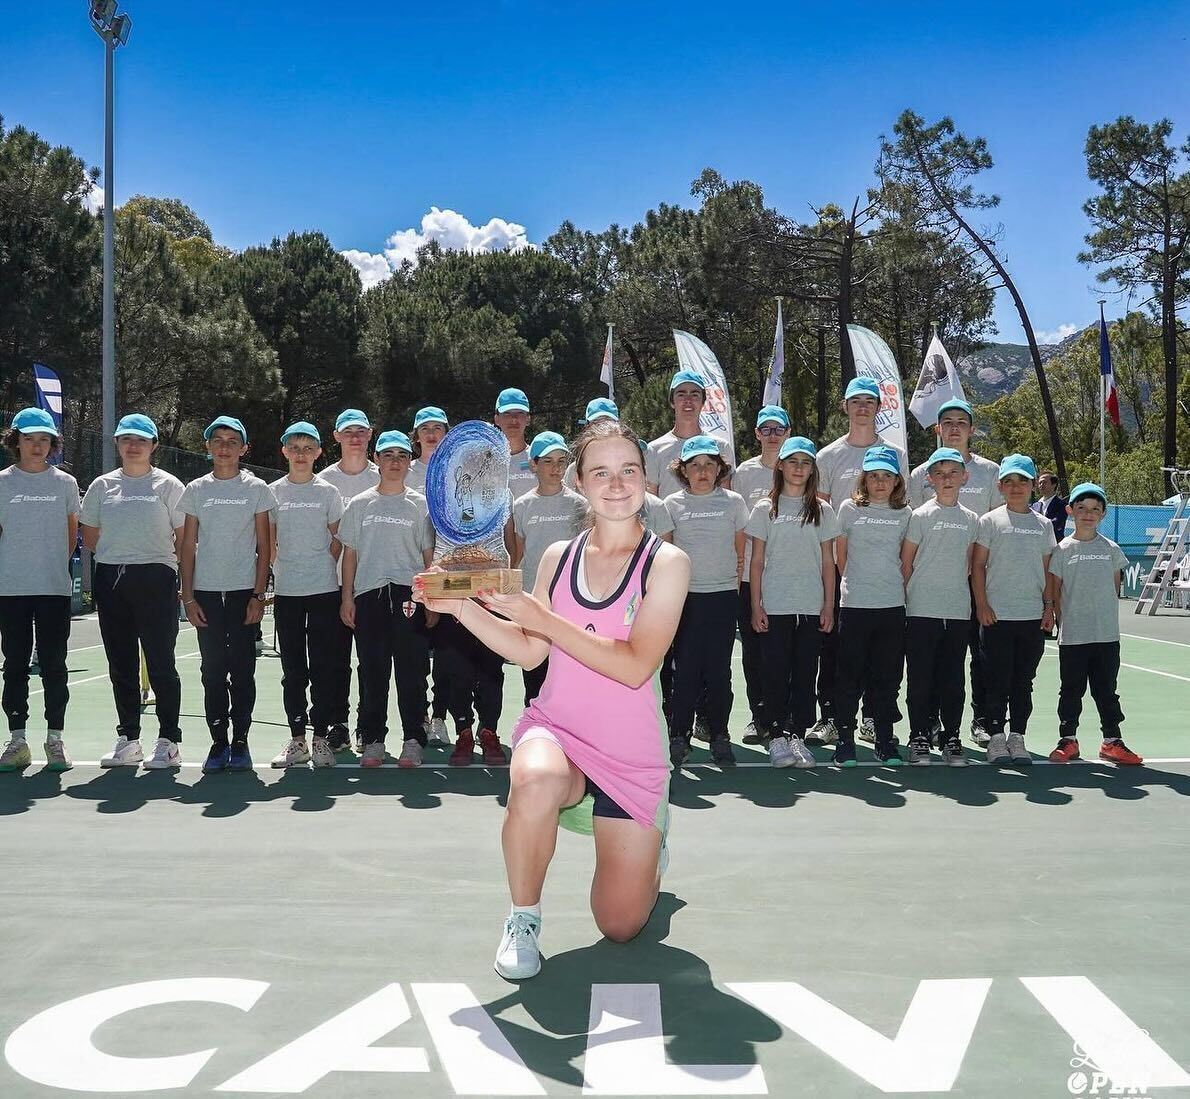 Українська тенісистка винесла чотирьох росіянок та виграла турнір у Грузії. Відео